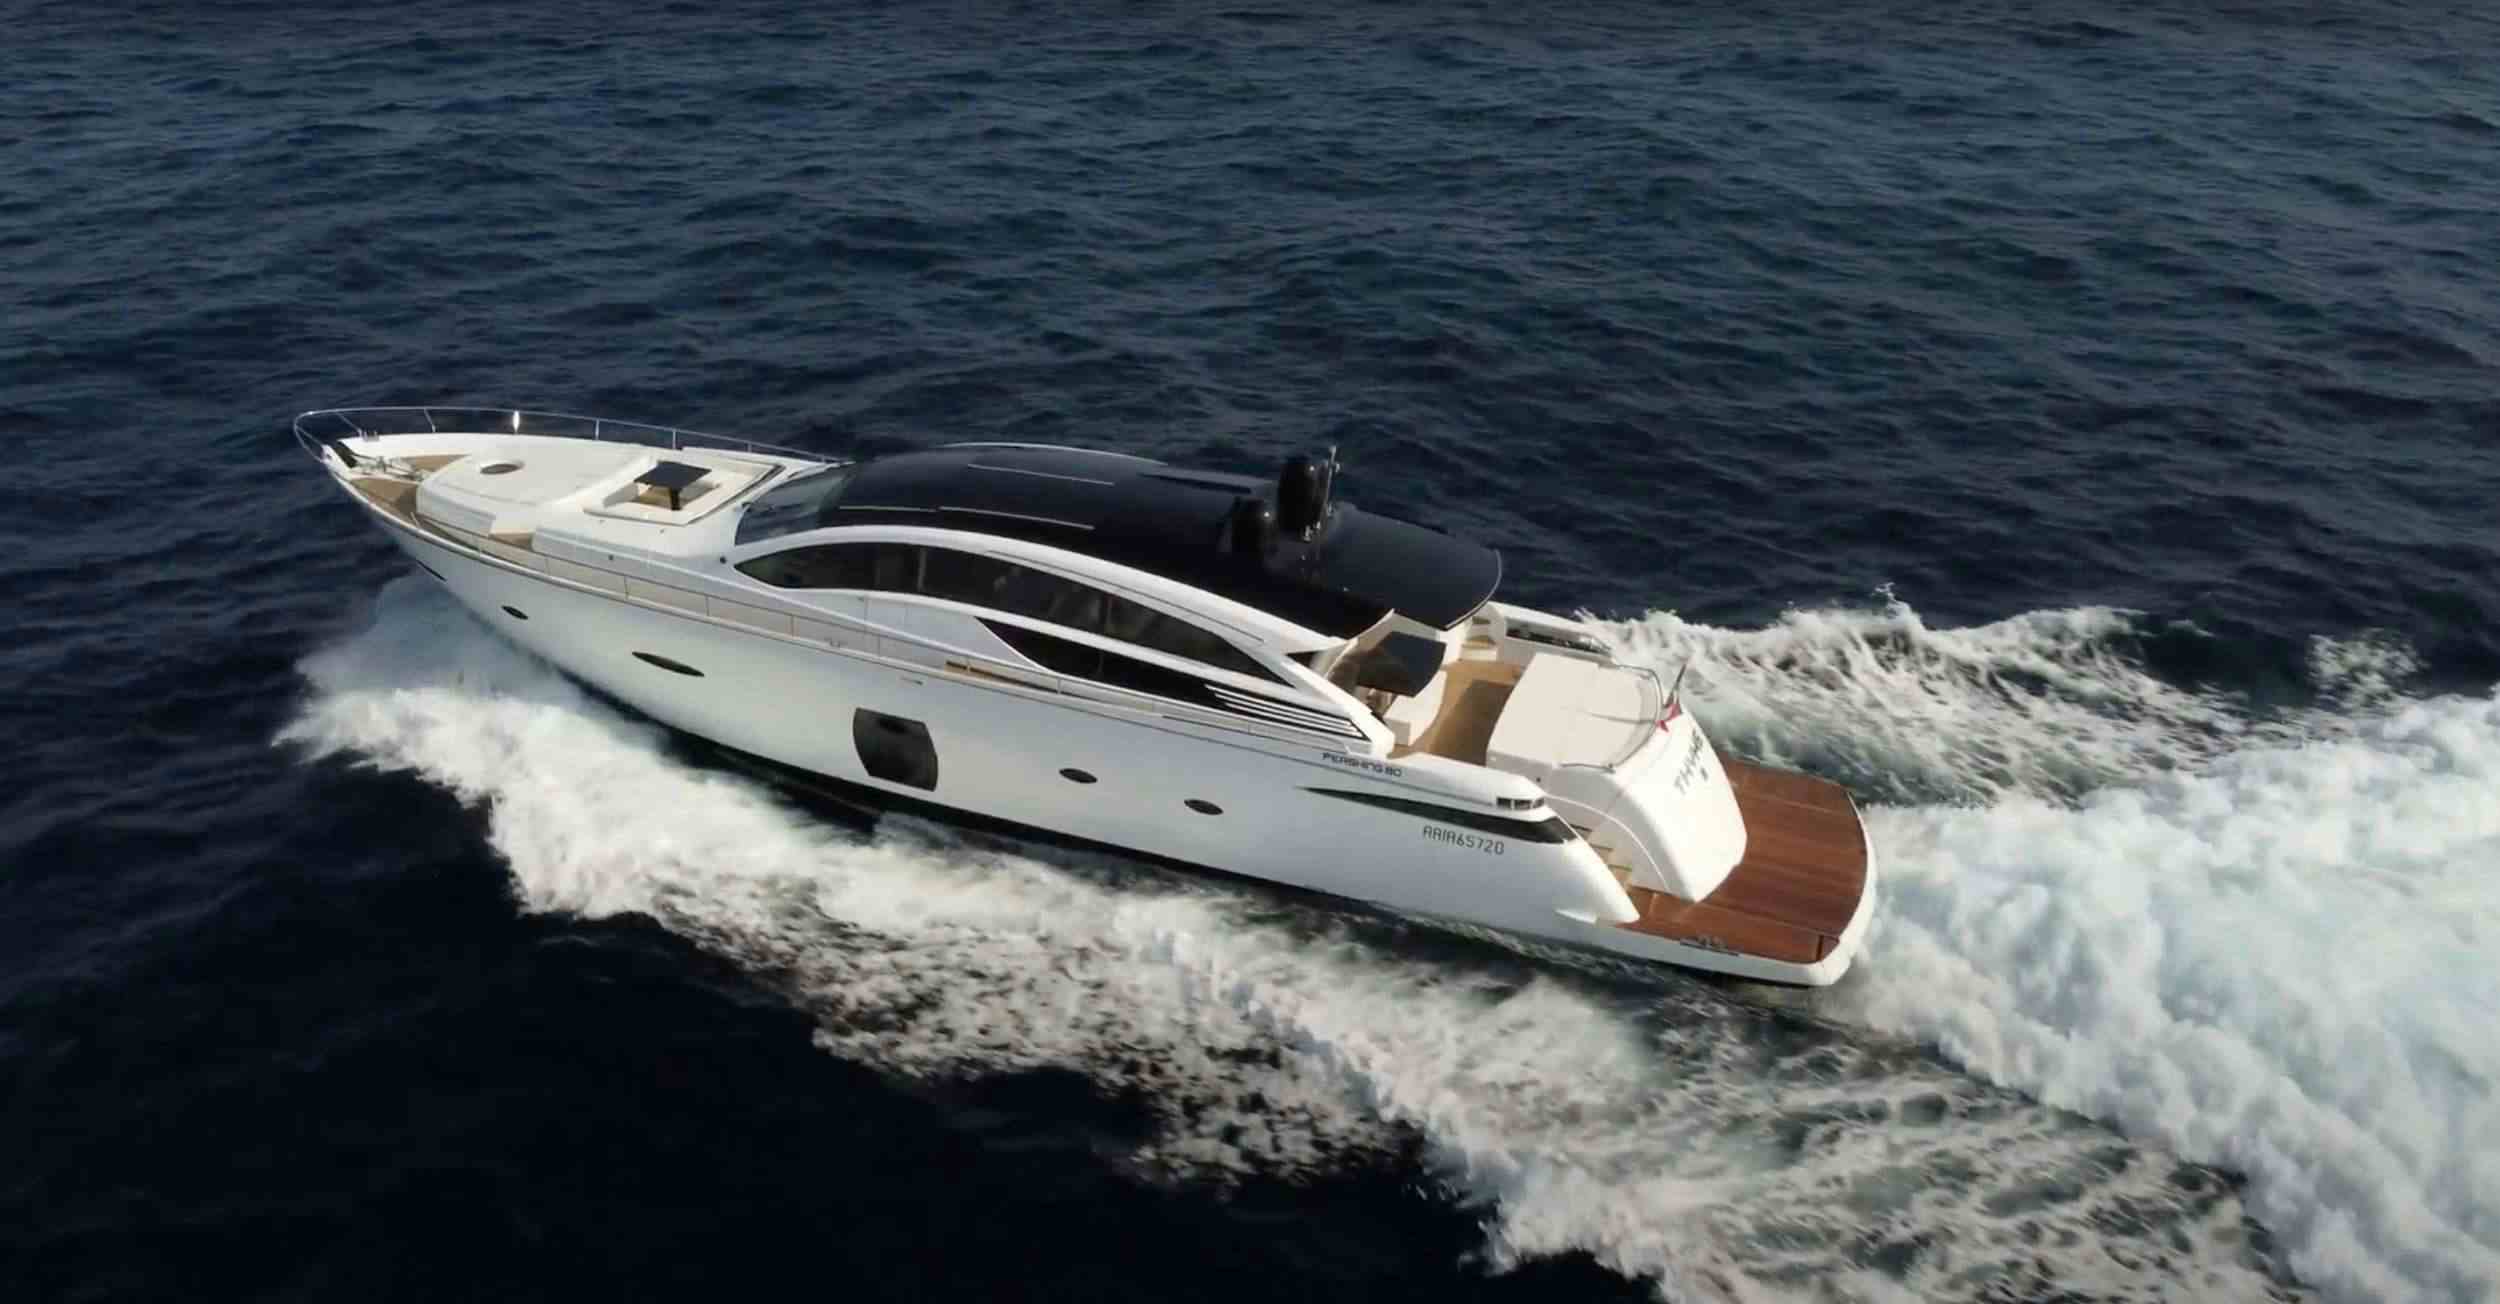 Thyke II - Yacht Charter Cogolin & Boat hire in Fr. Riviera & Tyrrhenian Sea 1